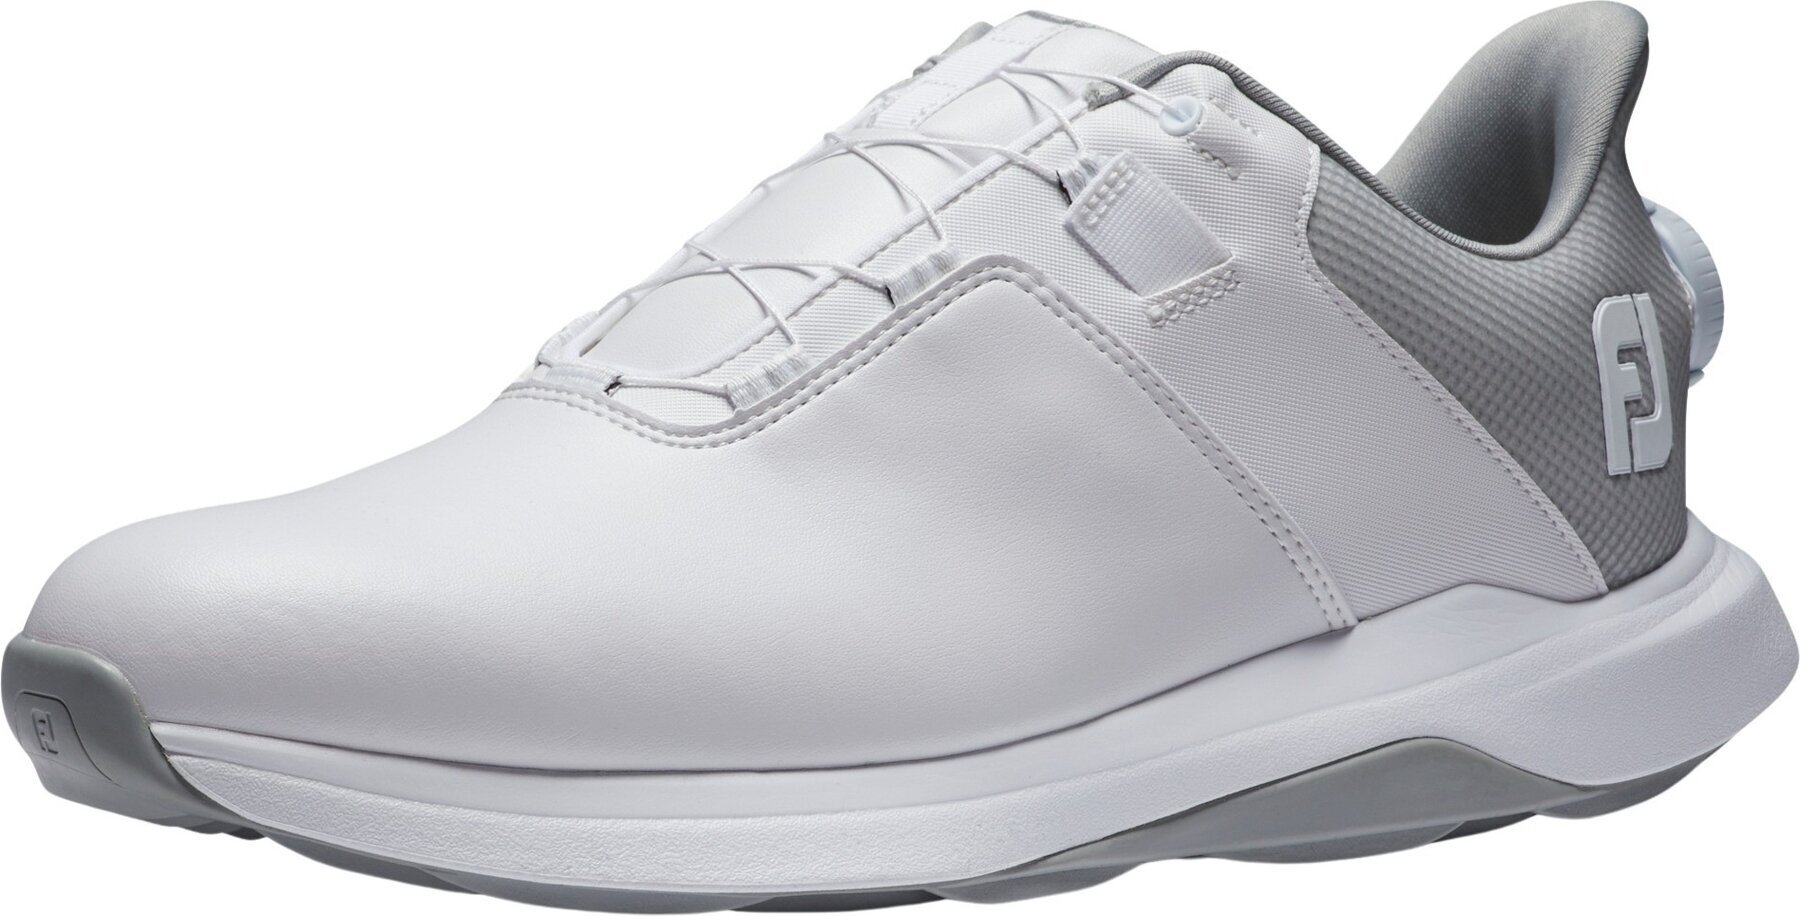 Chaussures de golf pour hommes Footjoy ProLite Mens Golf Shoes White/White/Grey 41